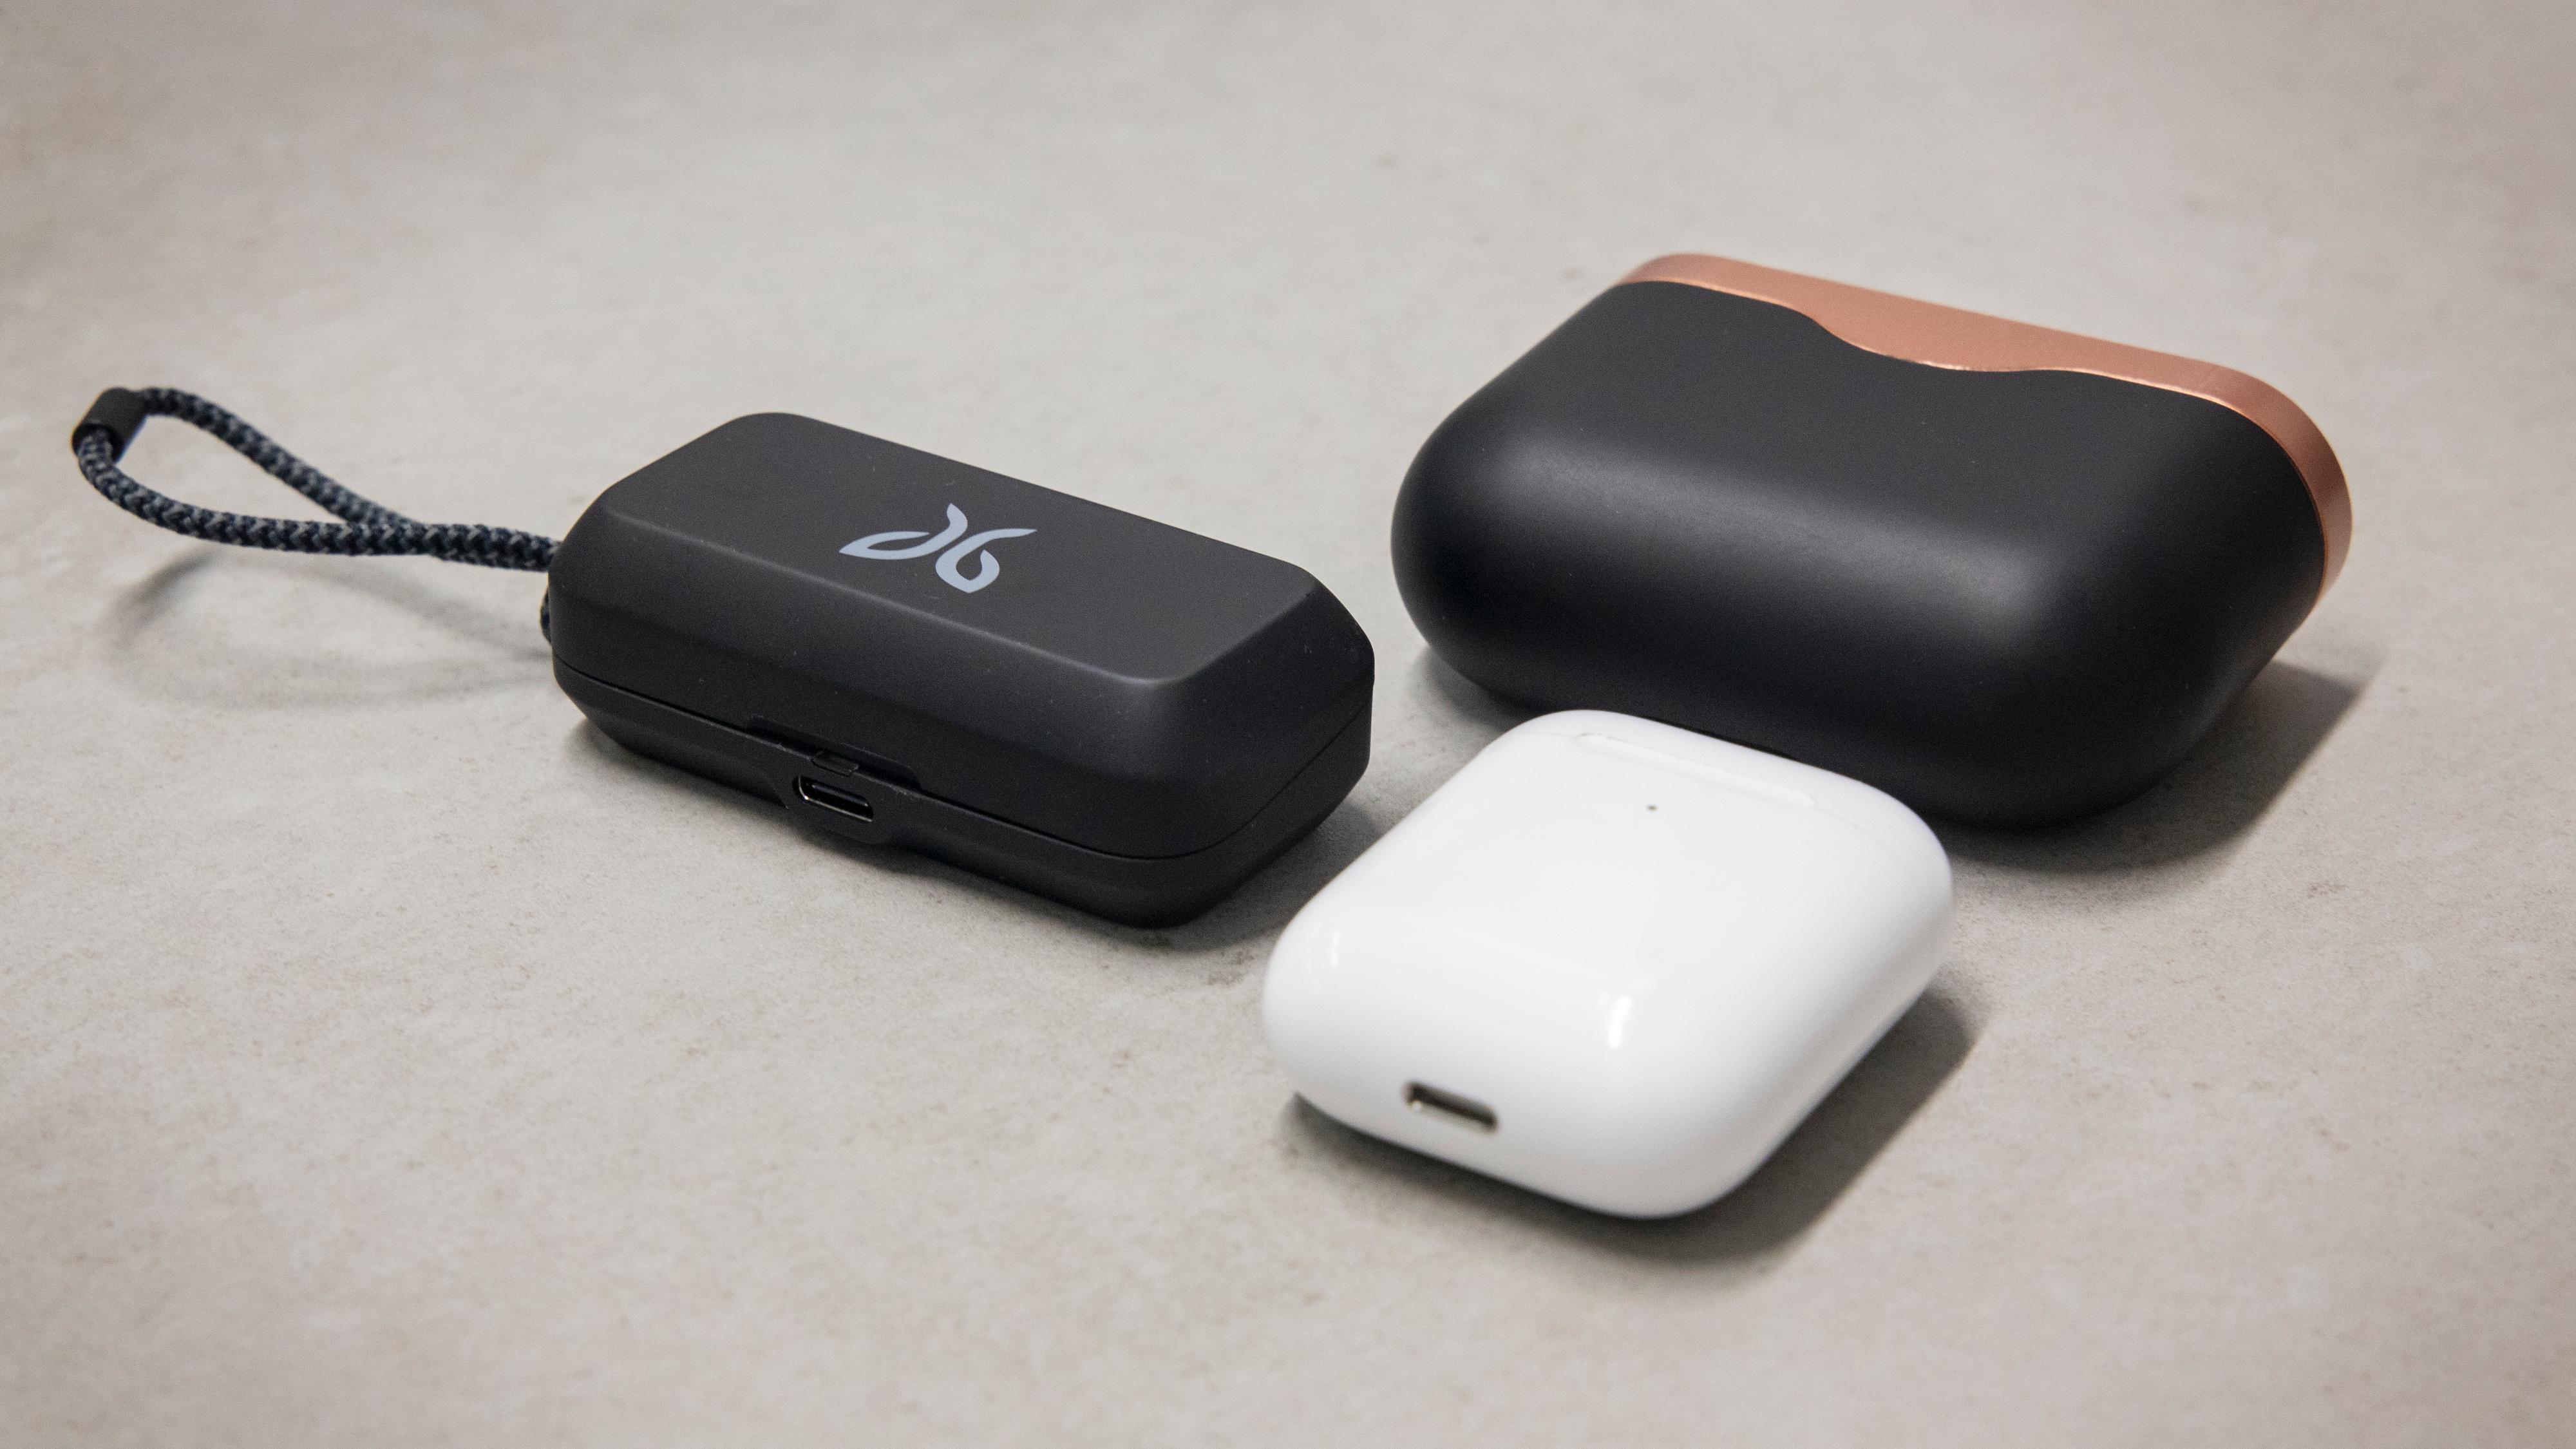 Jaybird-etuiet (til venstre) er betraktelig mindre enn Sonys etui til WF-1000XM3, men ikke helt like kompakt som Apples Airpods-etui.